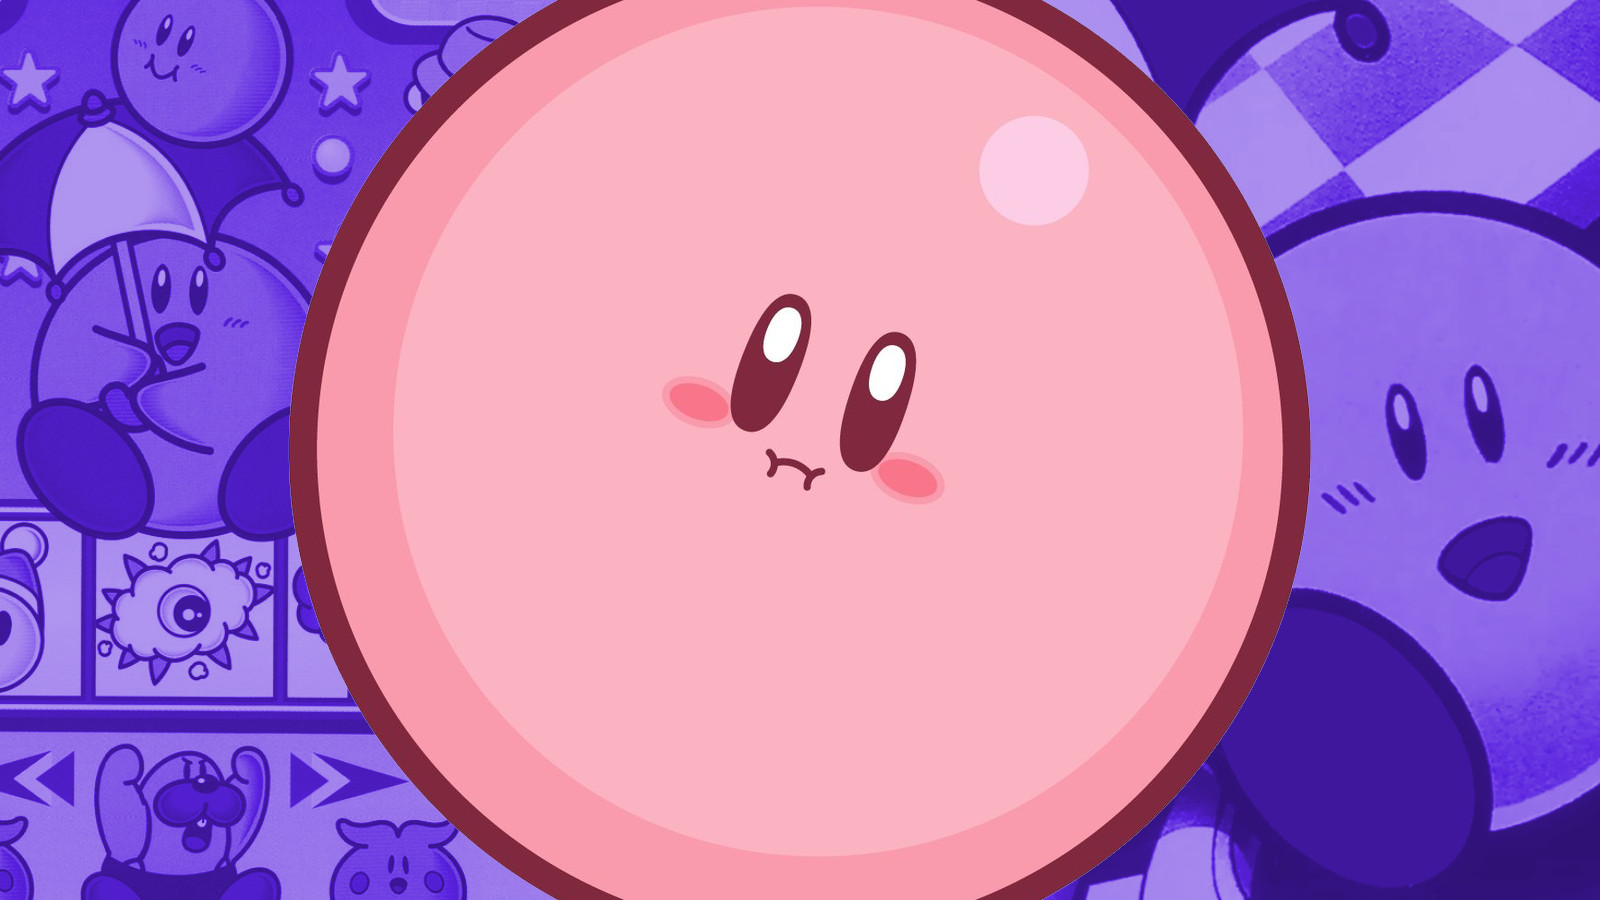 Kirby as a ball